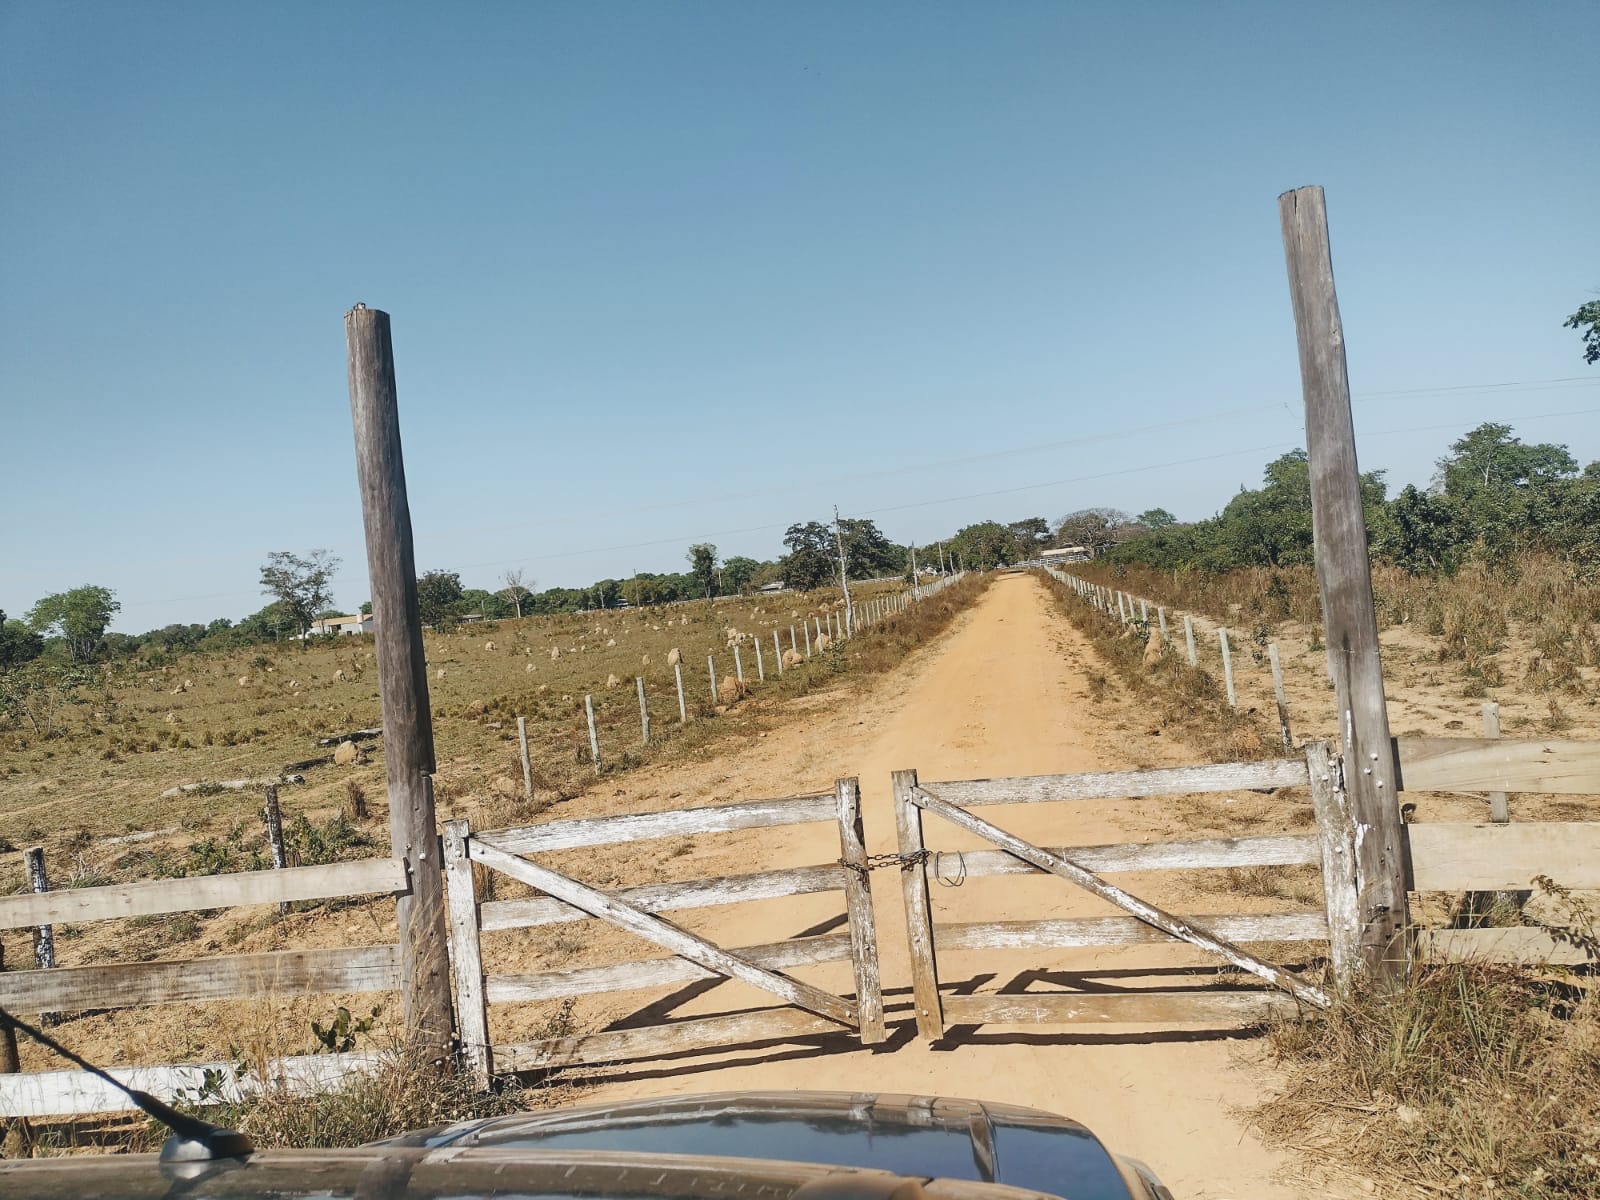 Fazenda no Mato Grosso Ideal para empreendimento Turismo Rural | Nova Nazaré - MT  | código 1018